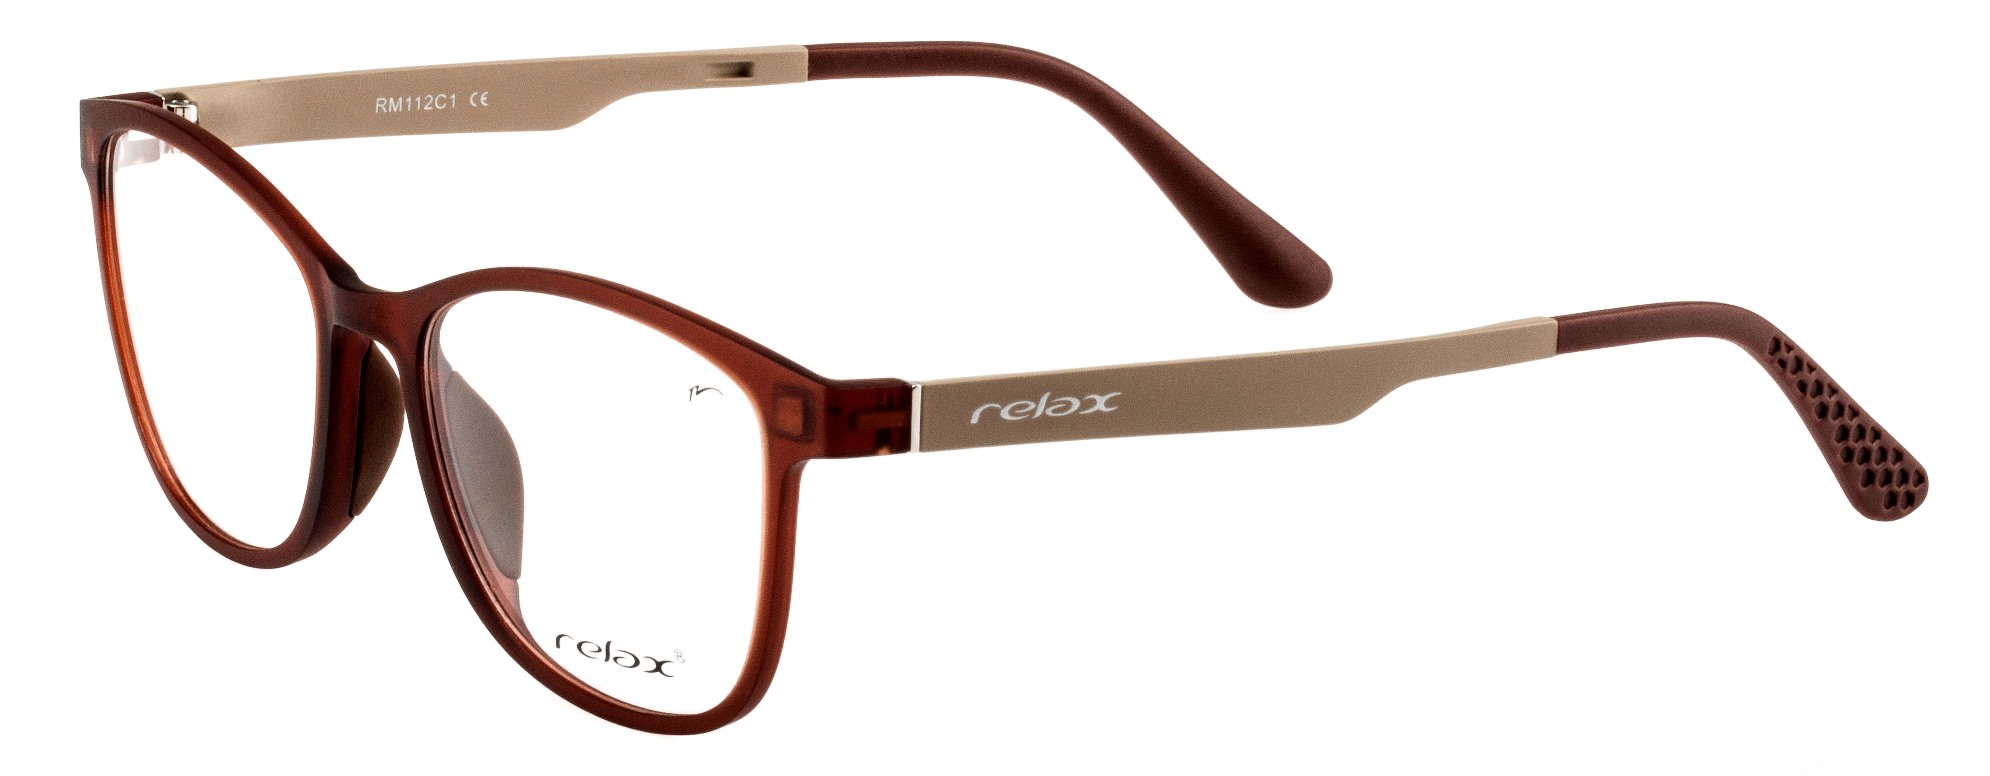 Dioptrické brýle Relax Ocun RM112C1 -